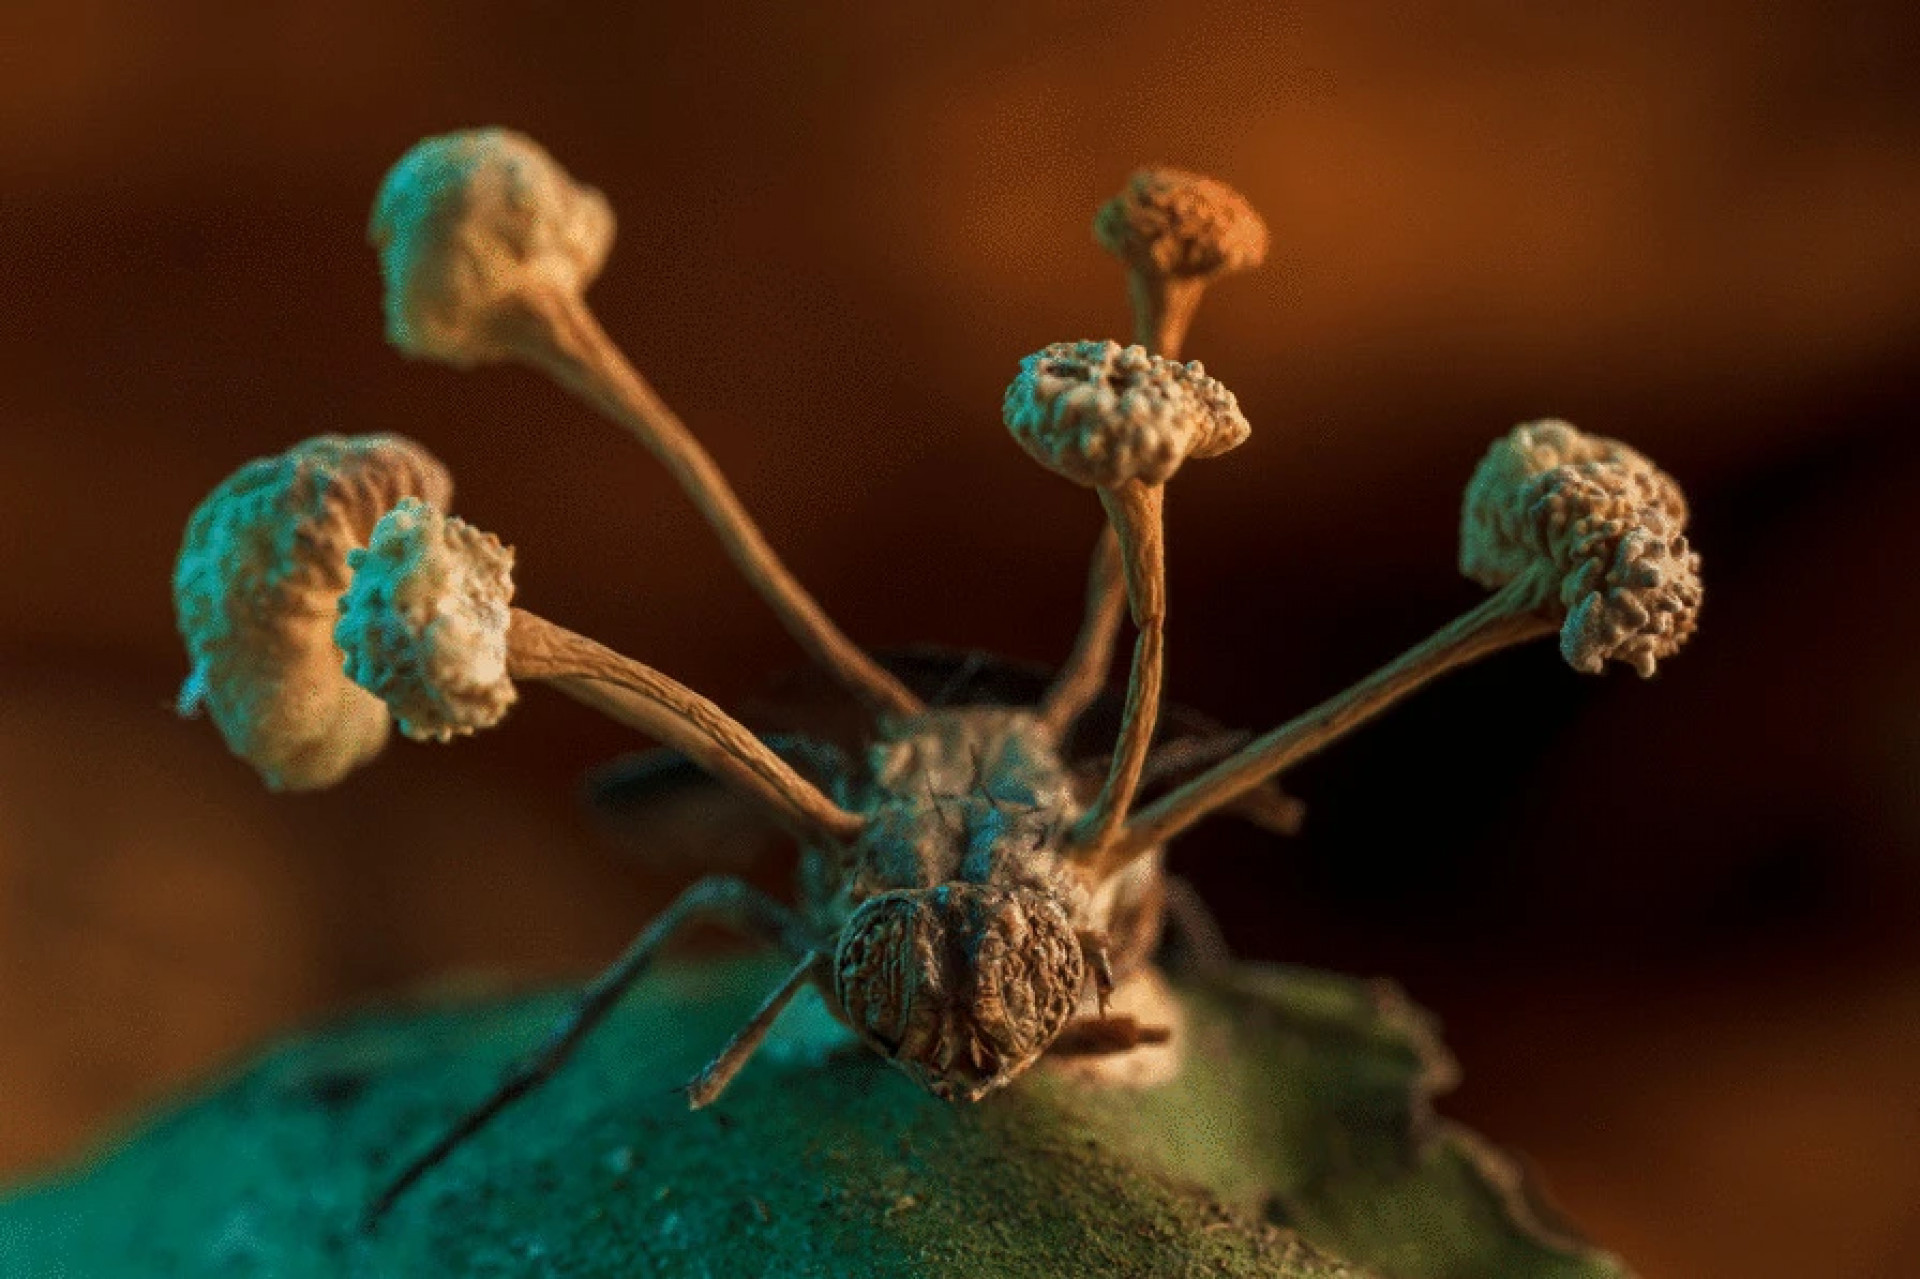 The Last of Us: é possível que uma pandemia de fungos crie zumbis